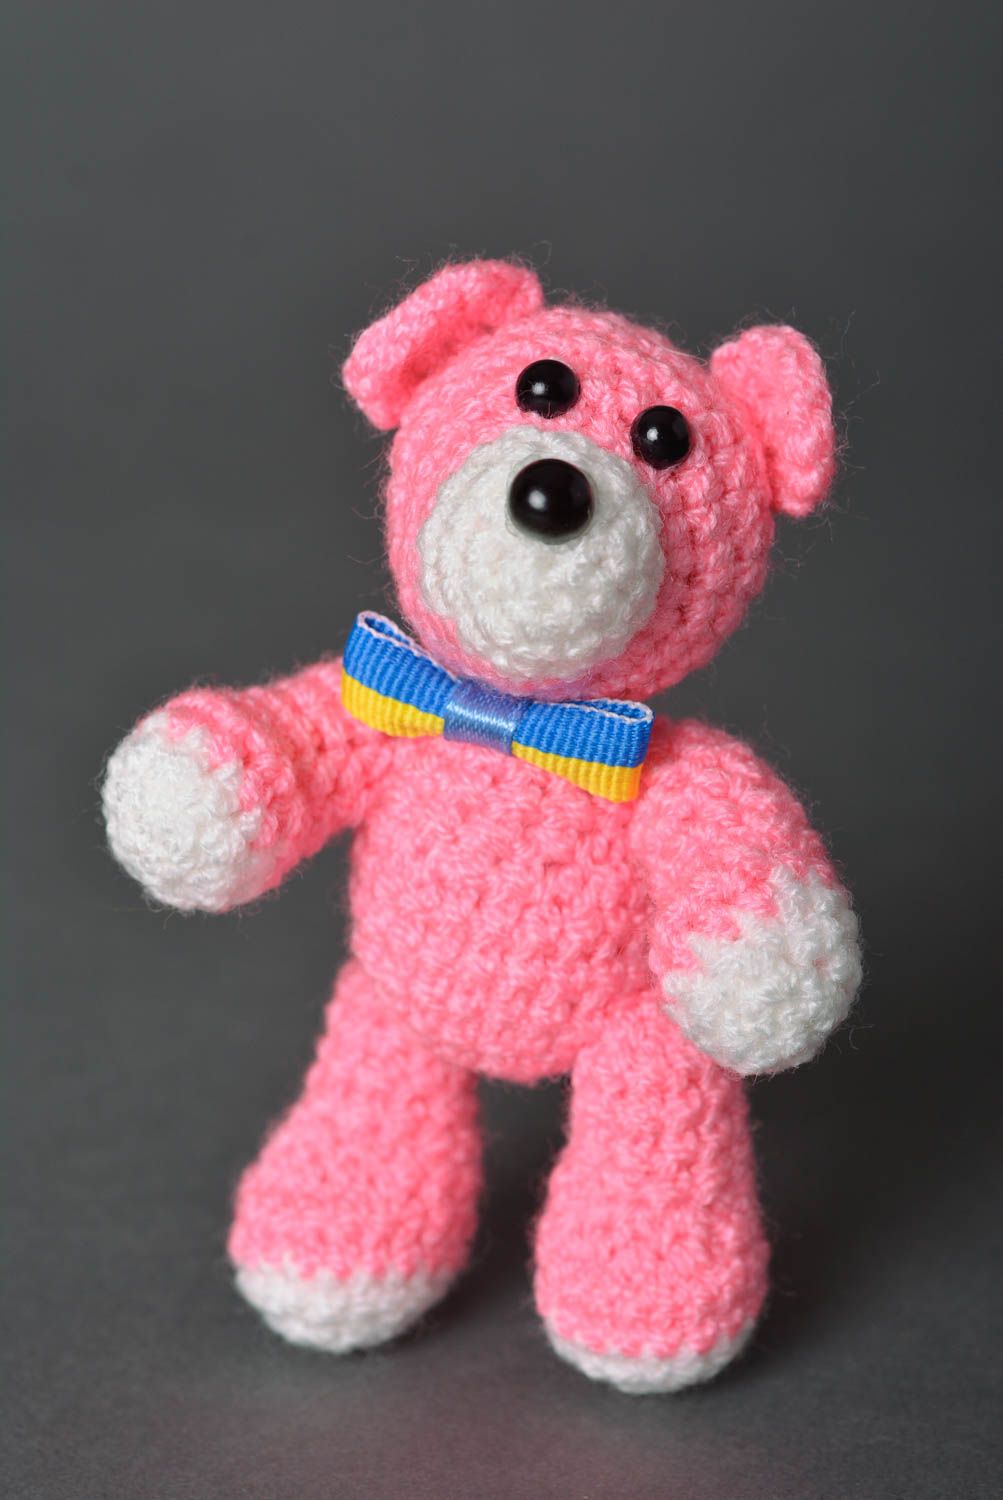 Peluche original hecho a mano juguete tejido al crochet regalo para niño Oso foto 1